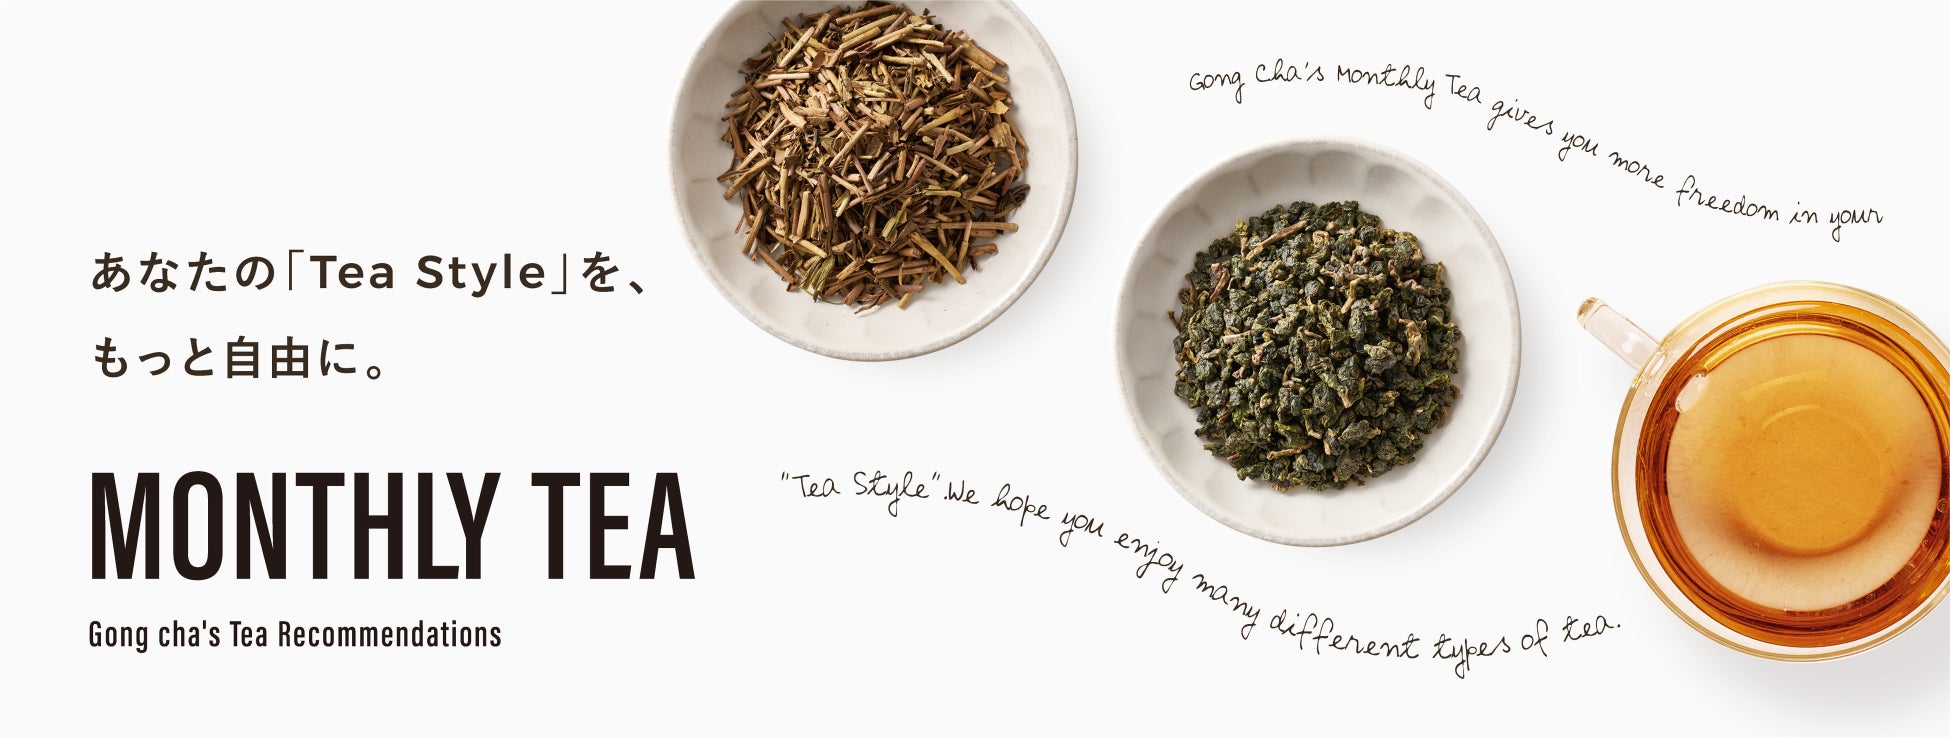 世界の個性豊かなTeaを愉しんで！Gong cha「Monthly Tea」